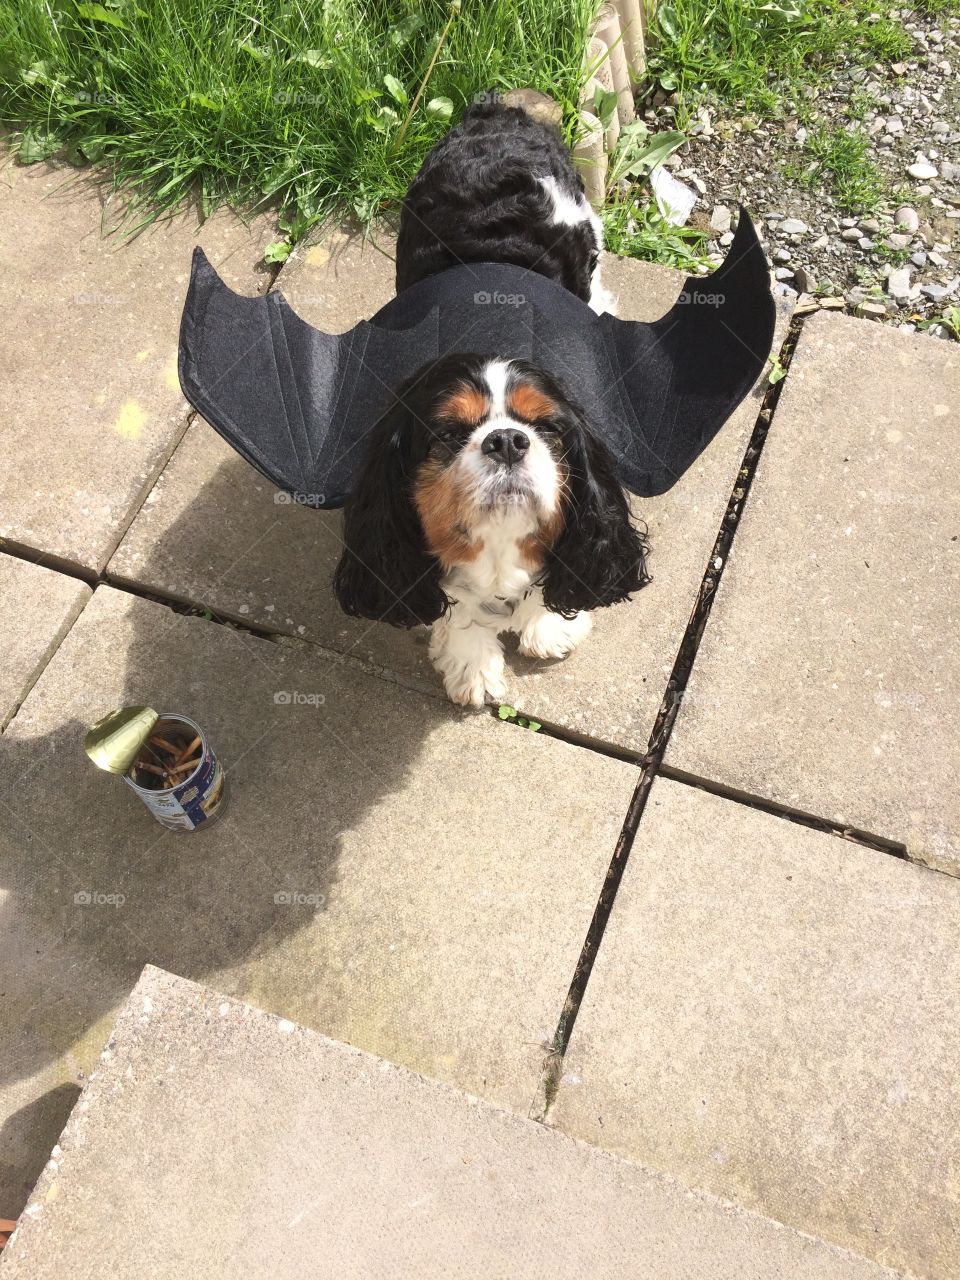 Dog with bat wings. Batdog. 